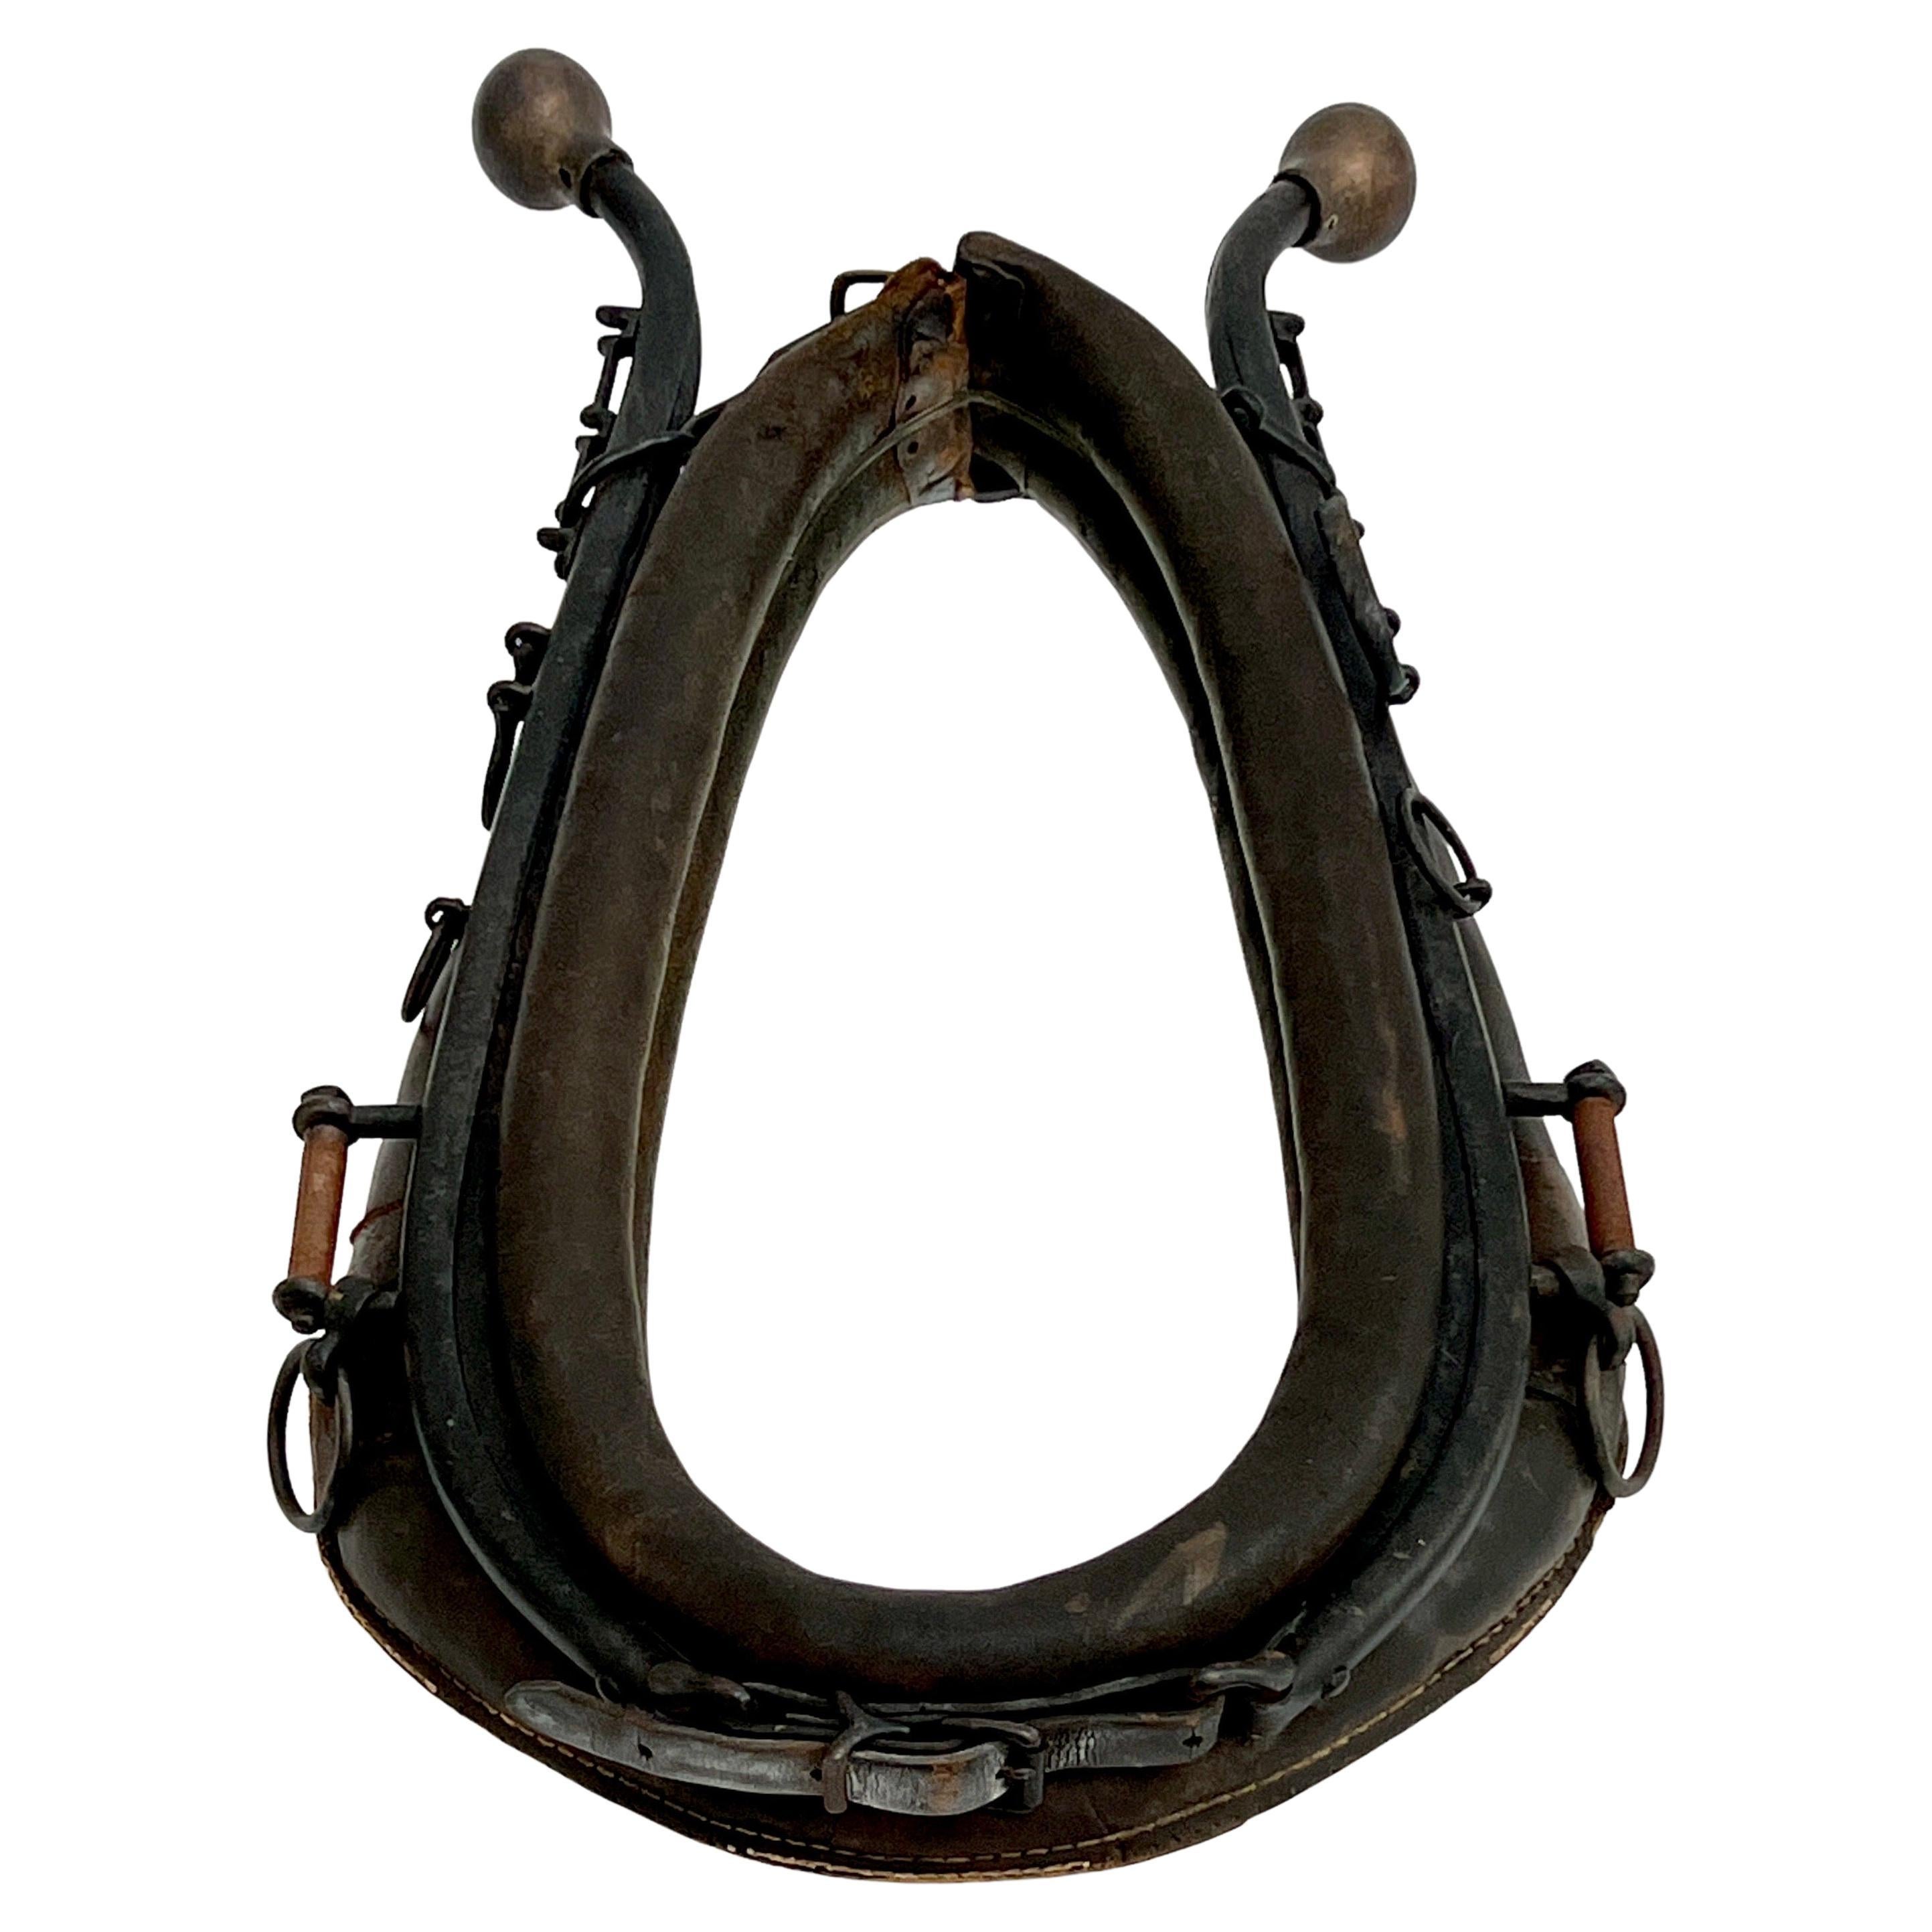 Miroir ancien à collier de cheval de la fin du 19e siècle.  Le collier est en cuir noir vieilli et les charnières en fer émaillé noir sont munies d'embouts en laiton patiné et d'anneaux en fer le long des côtés.  Utilisé à l'origine comme harnais de